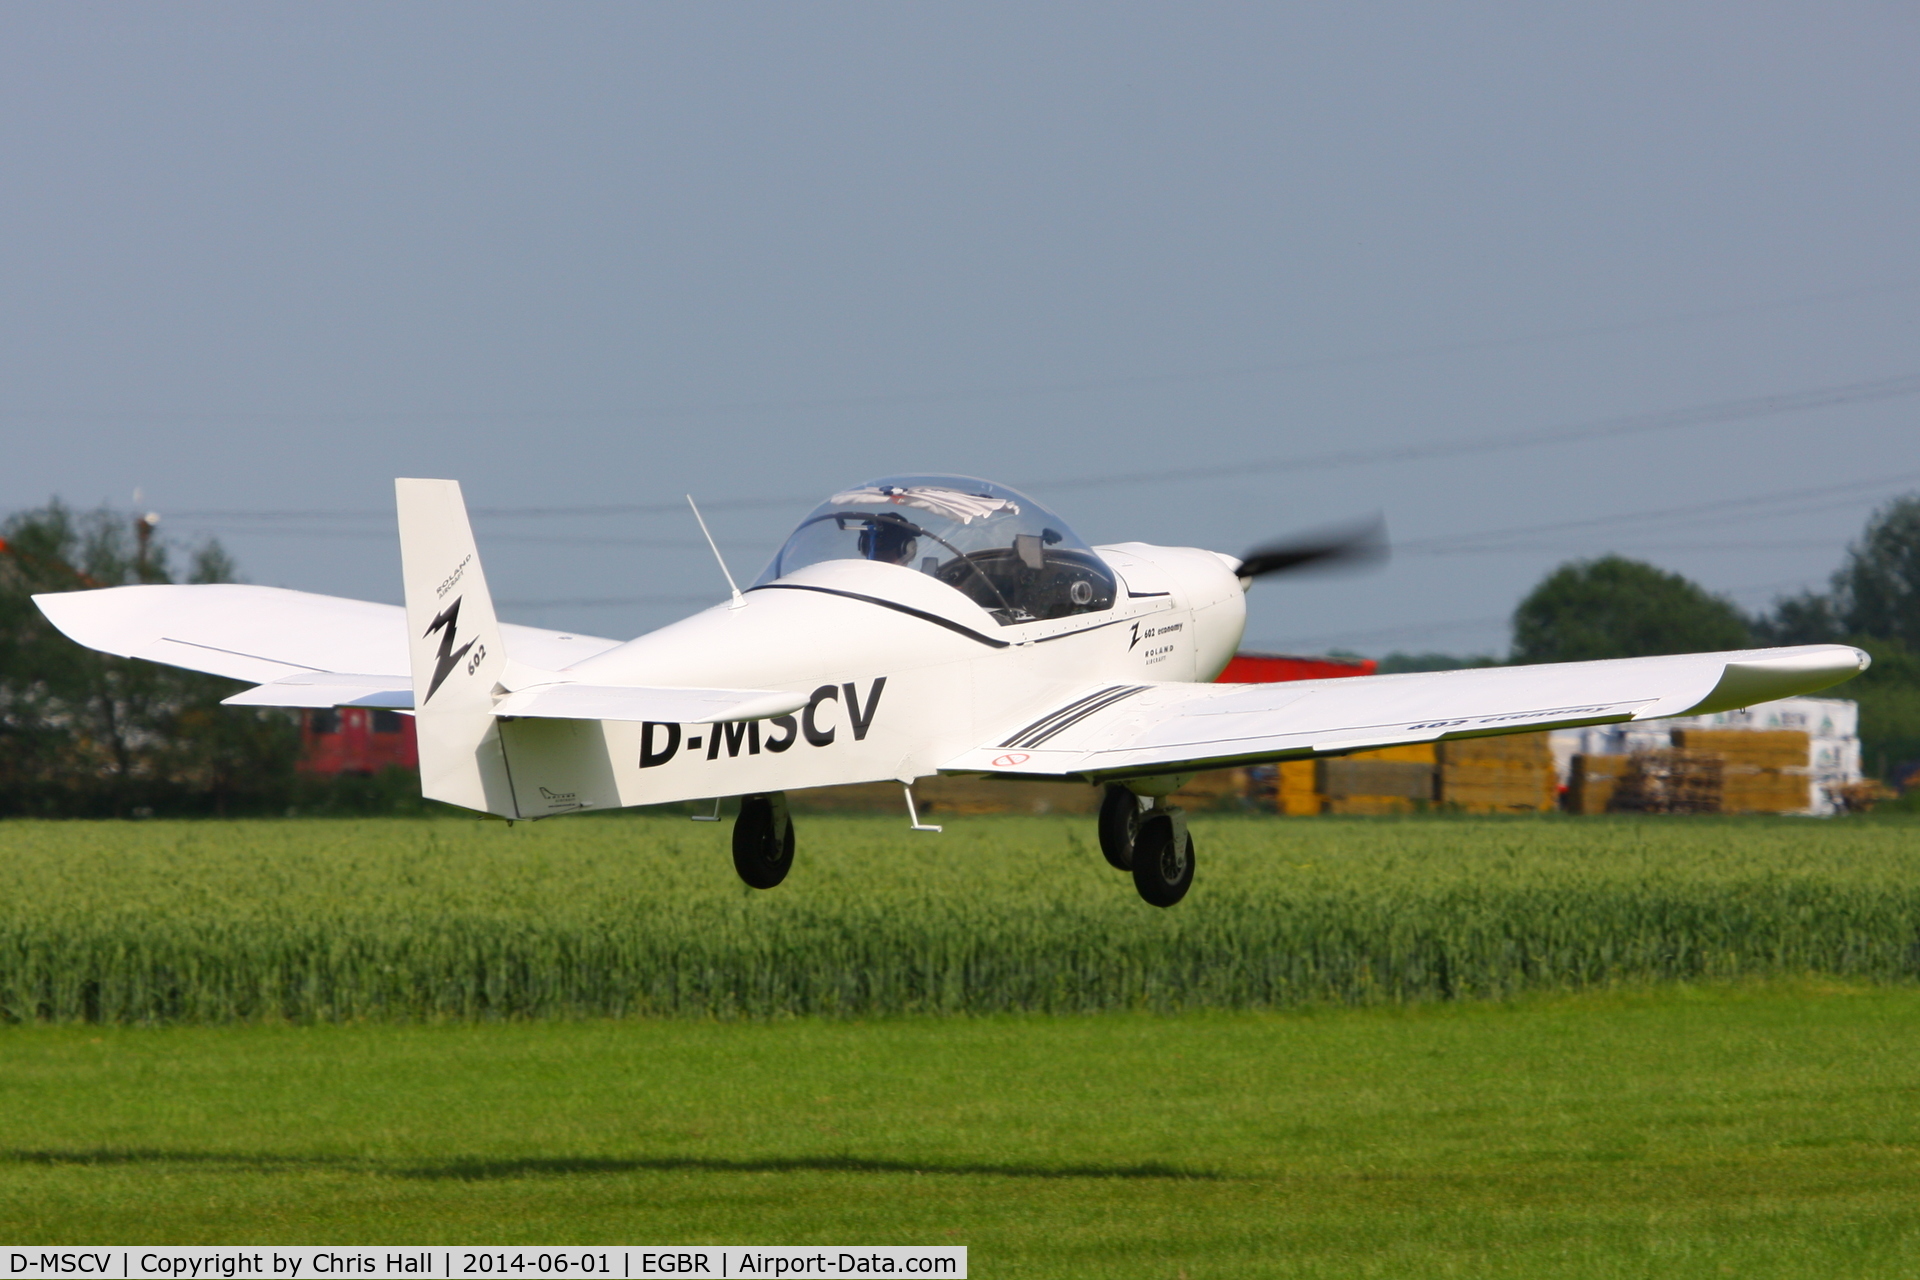 D-MSCV, 2009 Roland Z-602 C/N Not found D-MSCV, at Breighton's Open Cockpit & Biplane Fly-in, 2014